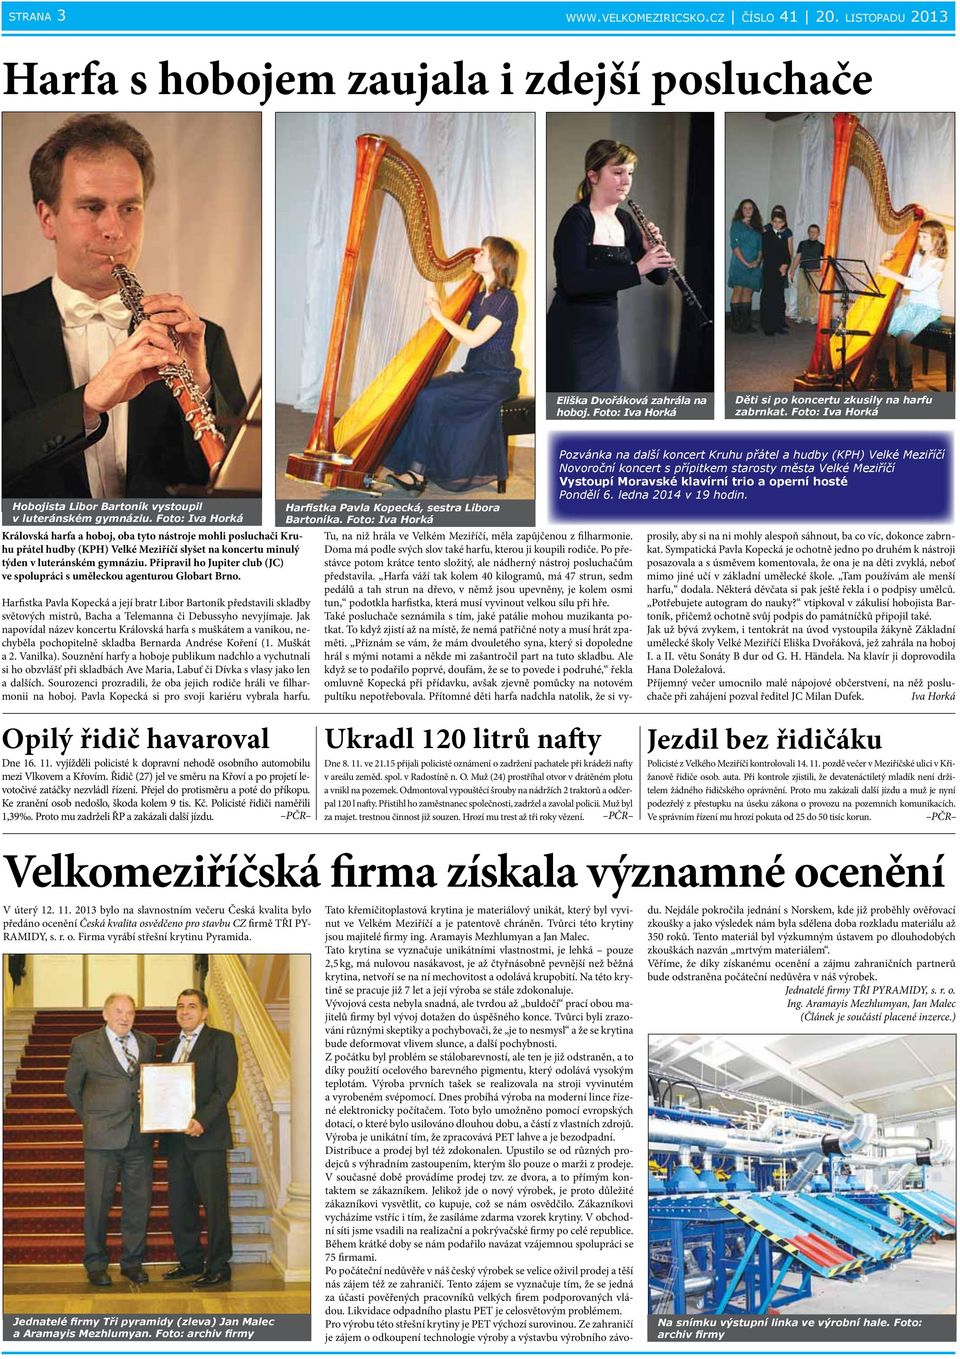 Foto: Iva Horká Královská harfa a hoboj, oba tyto nástroje mohli posluchači Kruhu přátel hudby (KPH) Velké Meziříčí slyšet na koncertu minulý týden v luteránském gymnáziu.